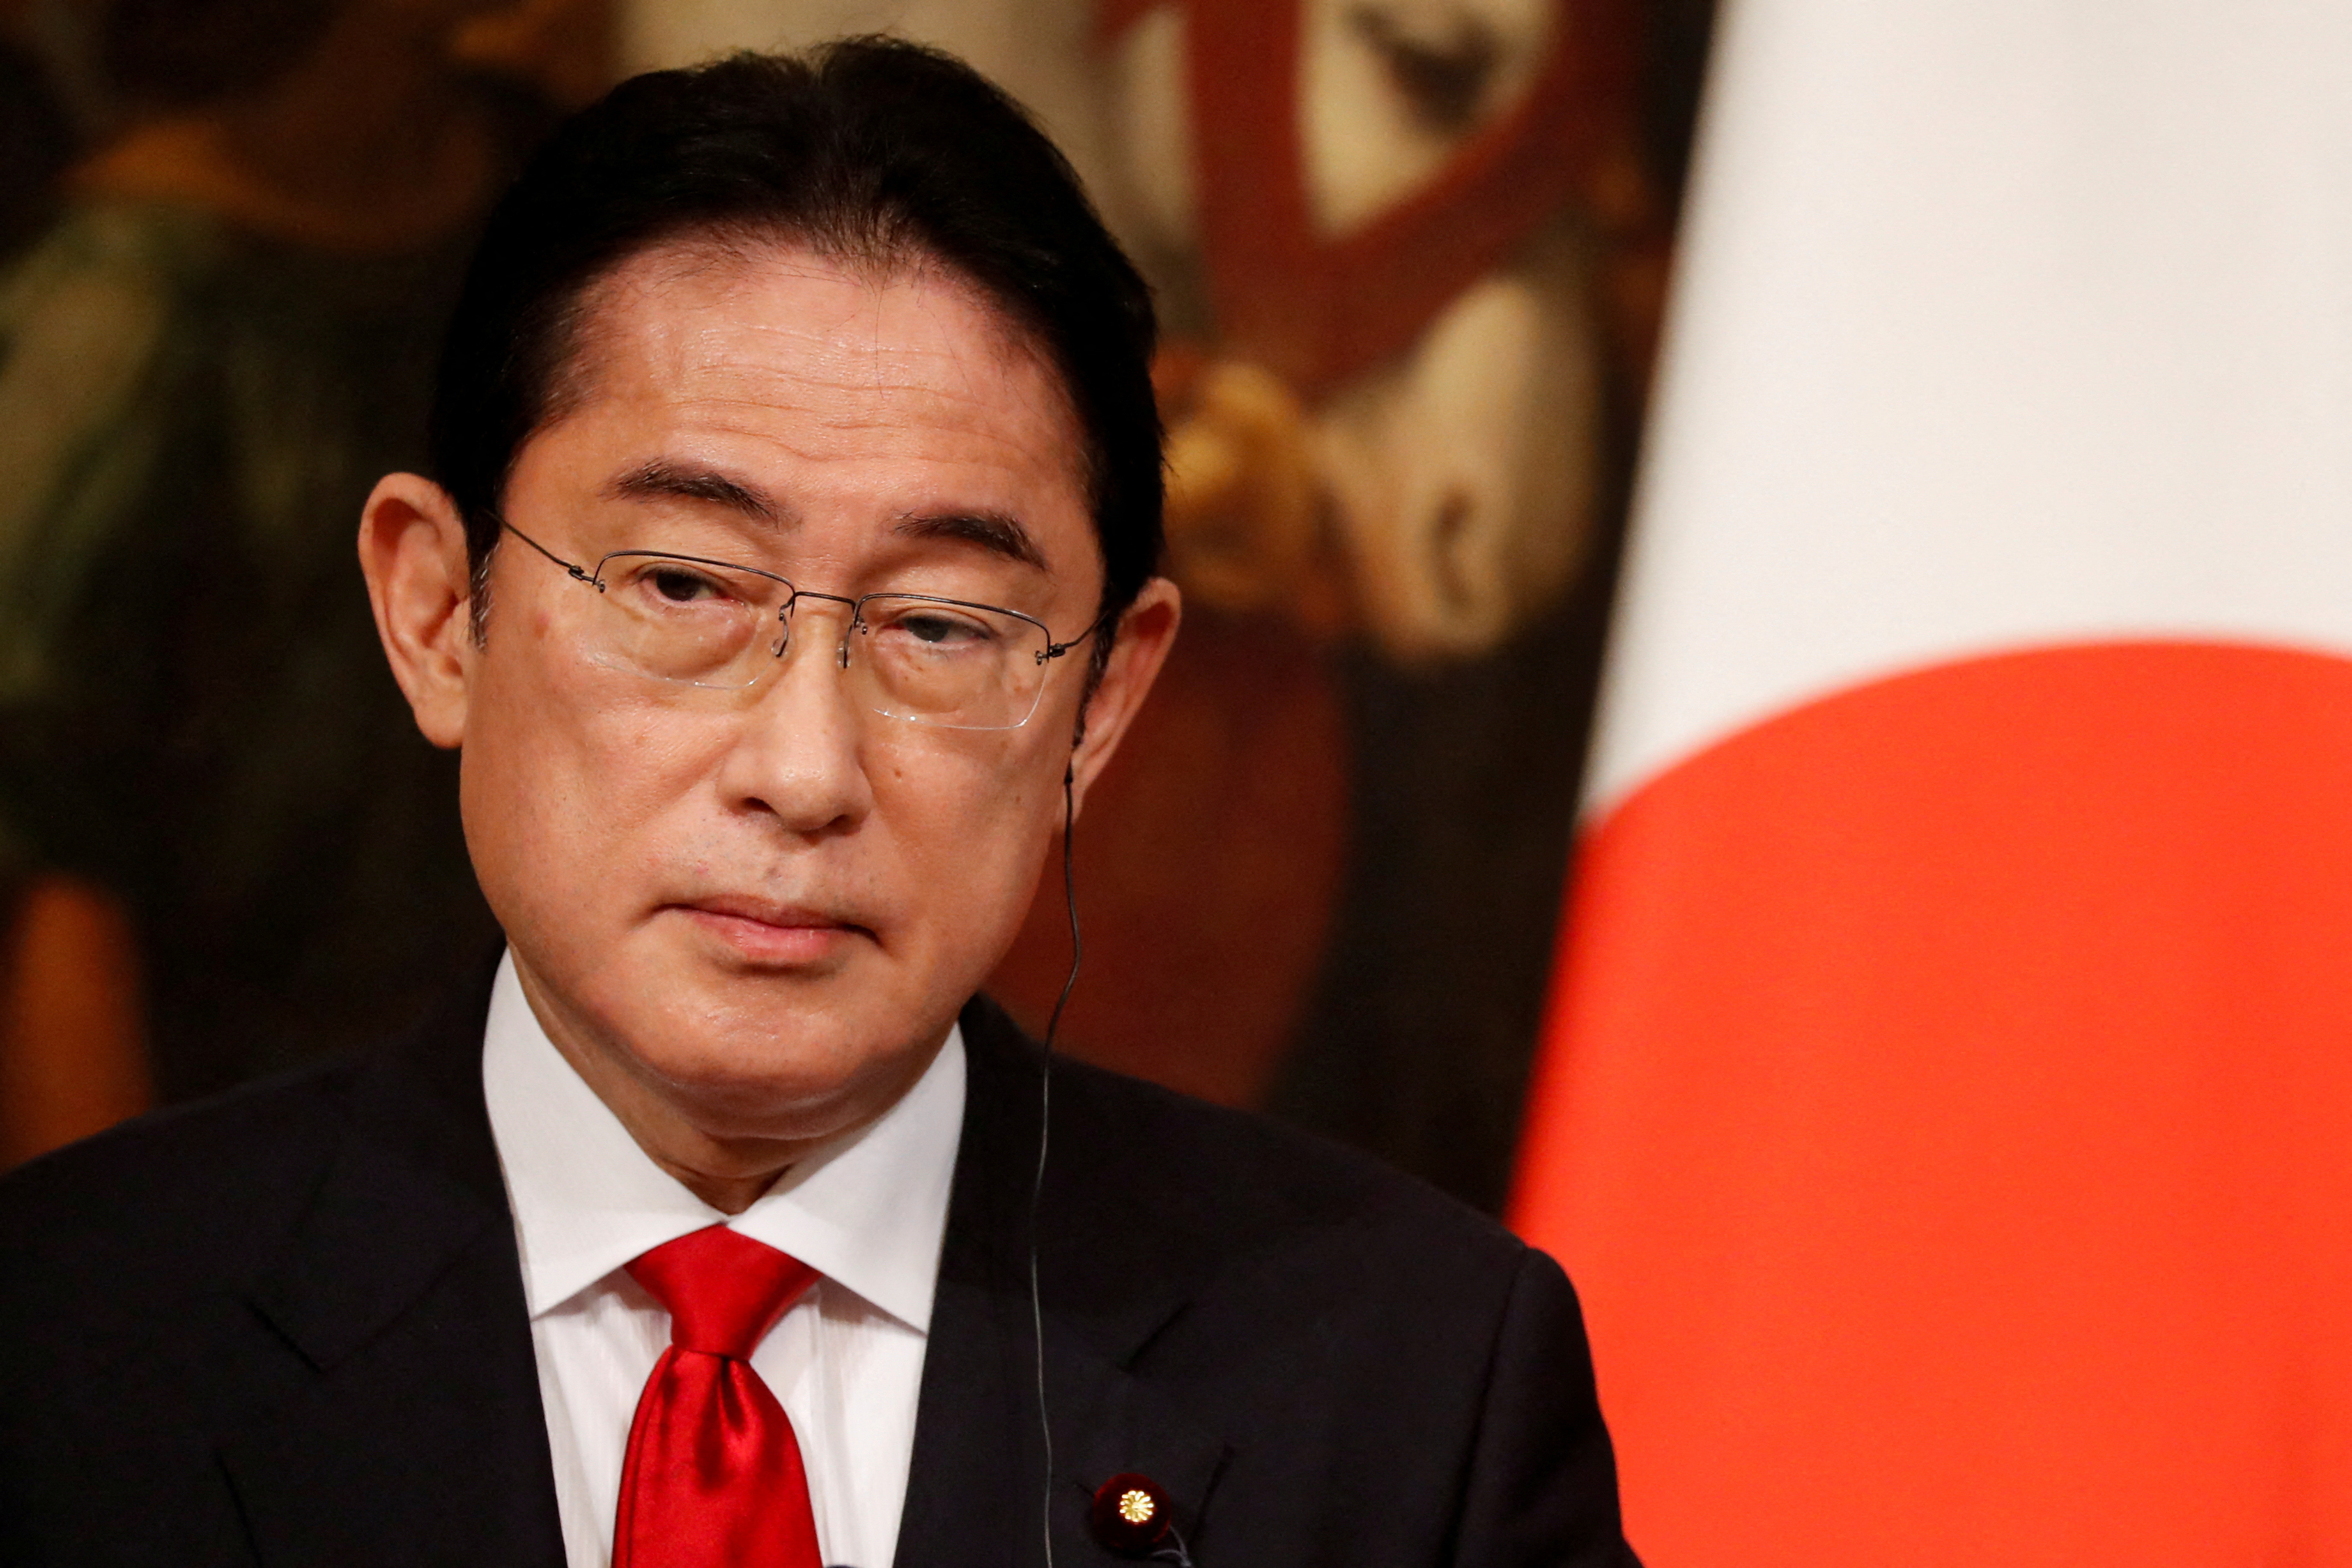 Presión china y nuevo primer ministro: ¿renacimiento militar del Japón? 4OT5MNTZXJ5UMCF4G2YLMFEUGY